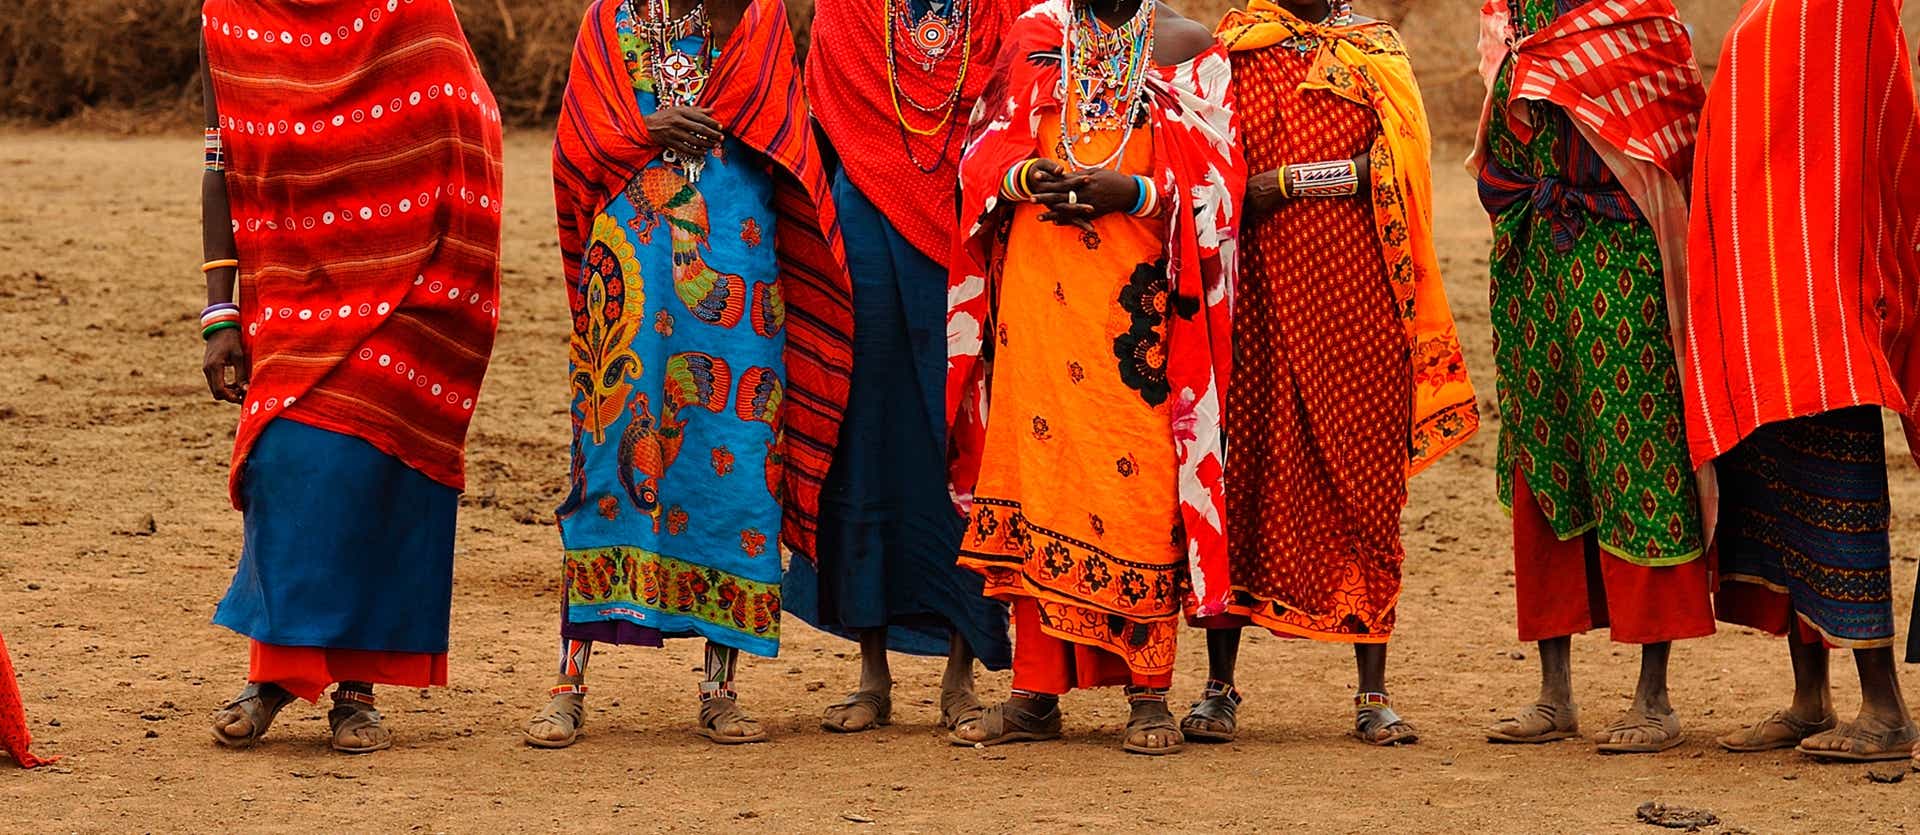 Vestidos de la tribu Masái <span class="iconos separador"></span> Tanzania